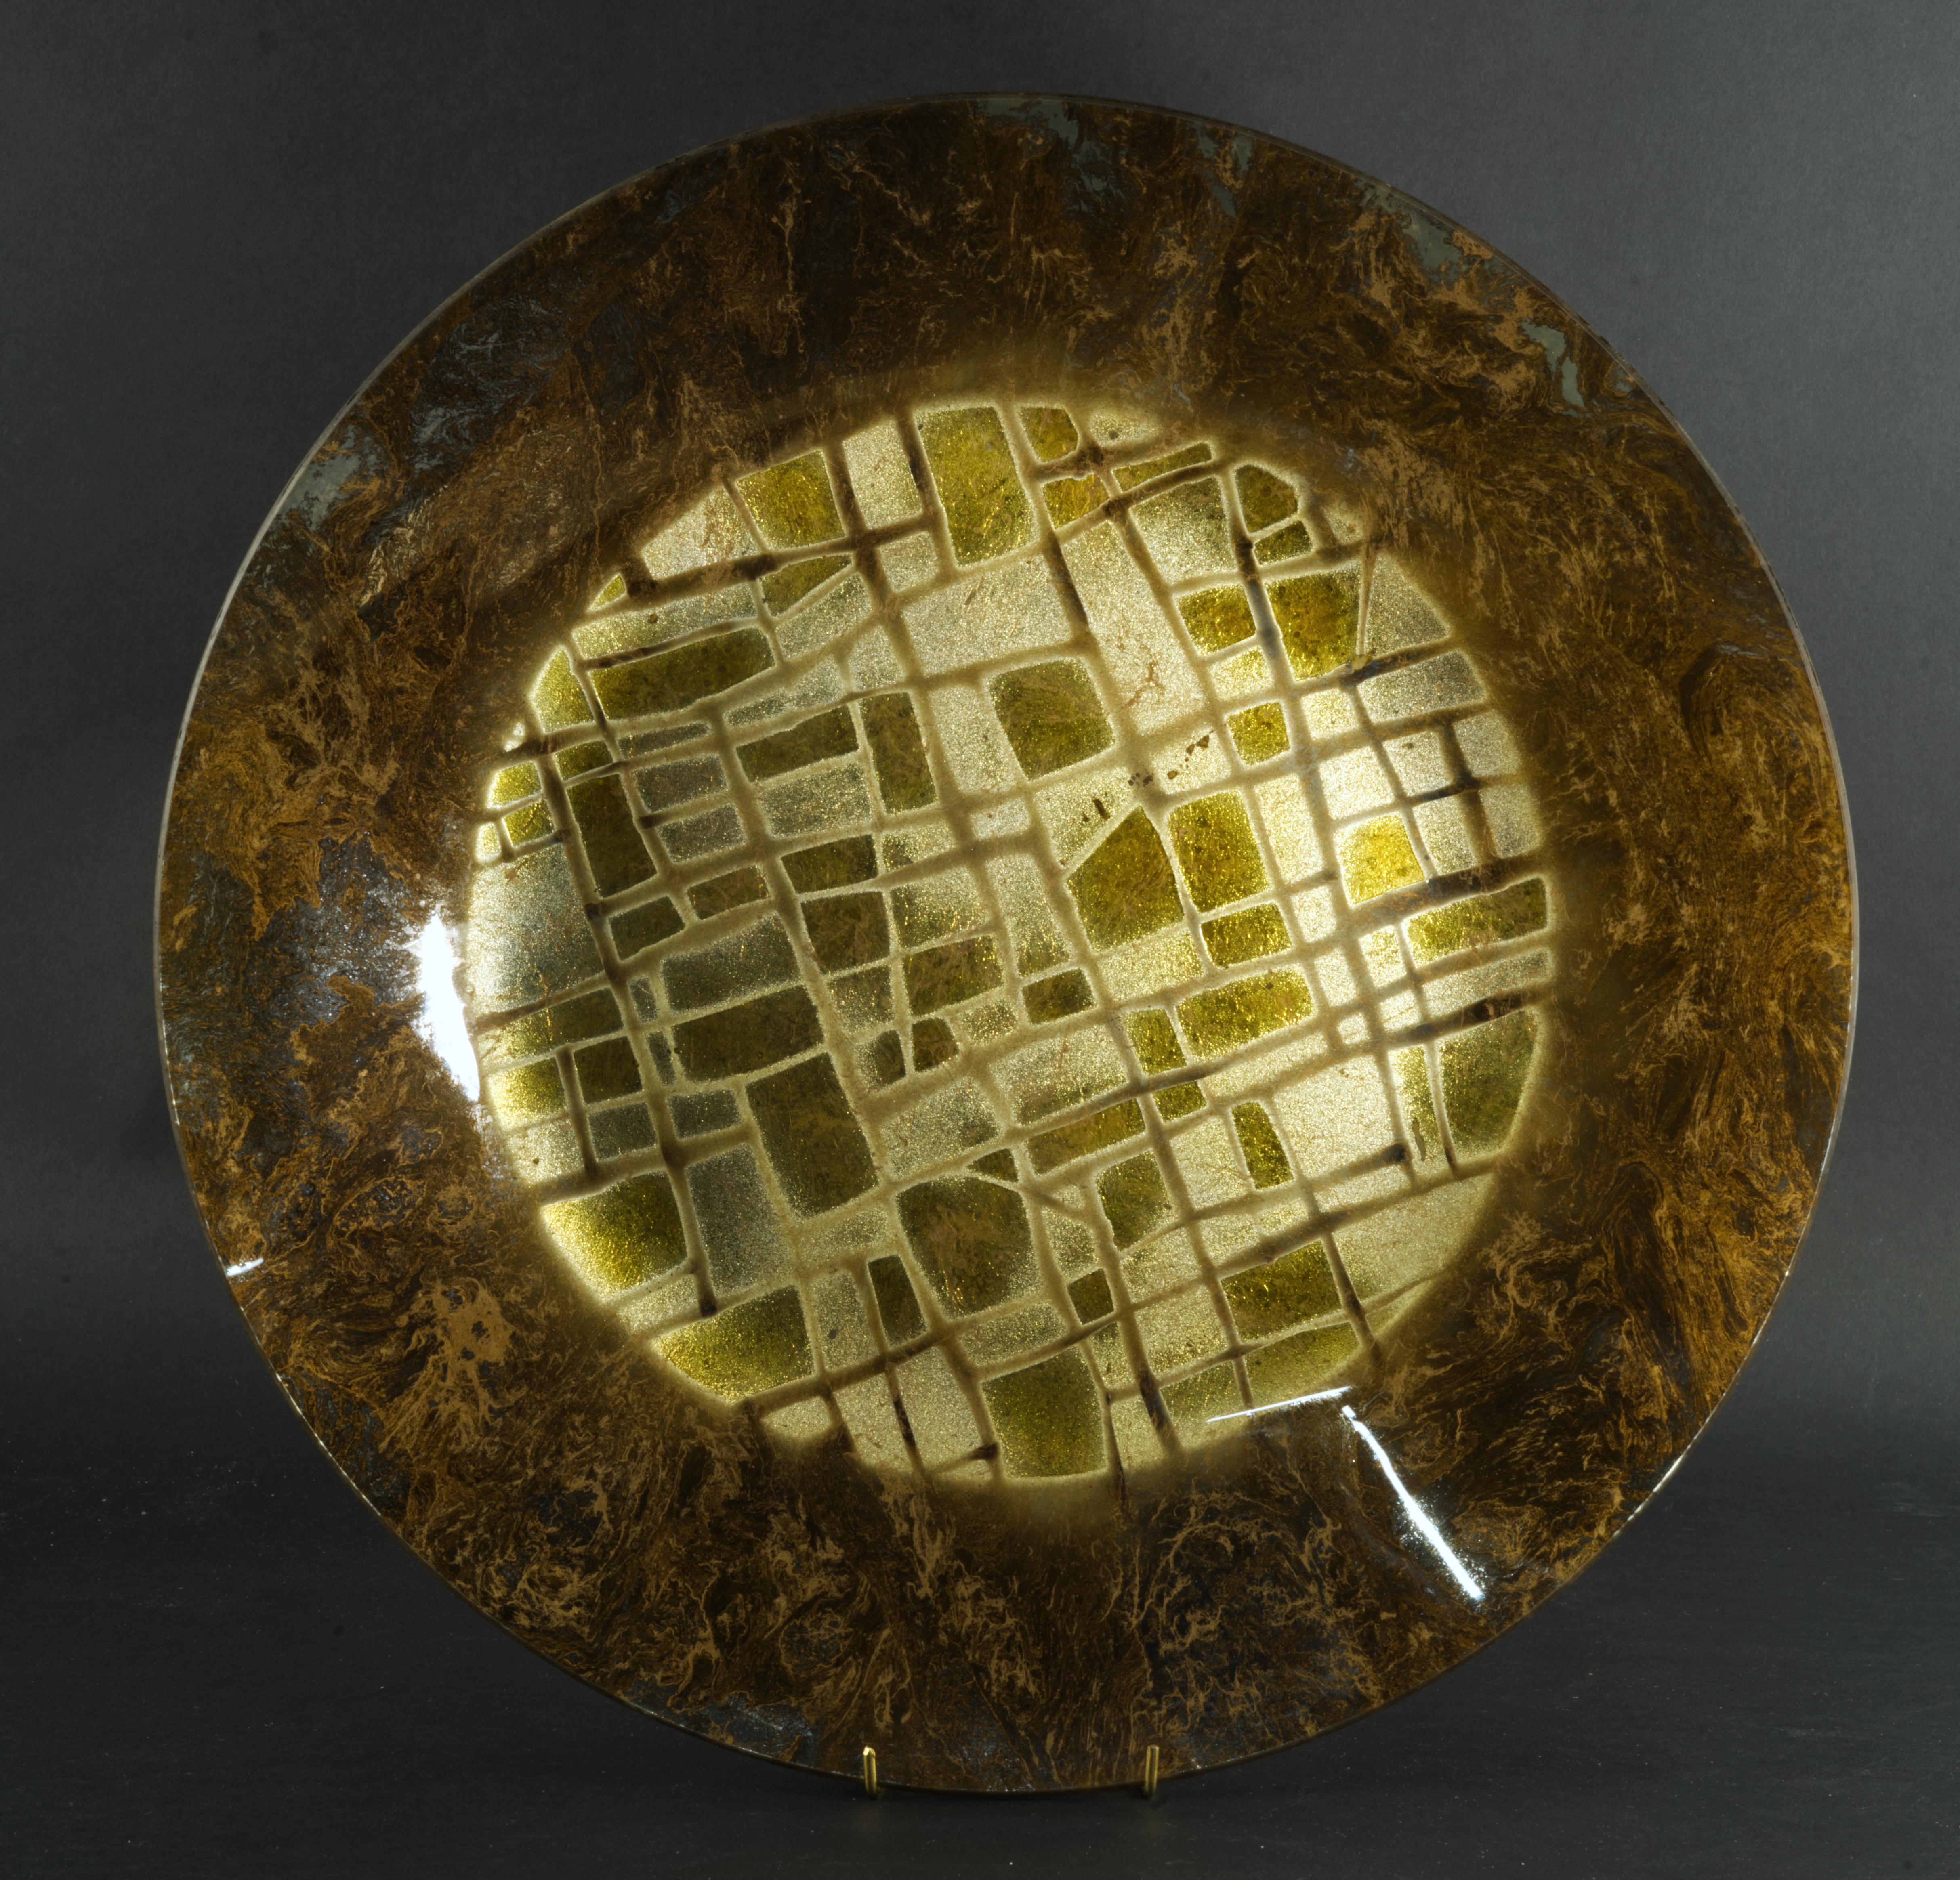 
Der seltene Glasteller oder die Schale wurde in den 1950er Jahren von Dick Talbett für sein Studio Ancient Glass als Teil der Radiant Temple-Serie handgefertigt. Die Schale zeigt in der Mitte ein abstraktes grafisches Muster in Gold und Silber, das